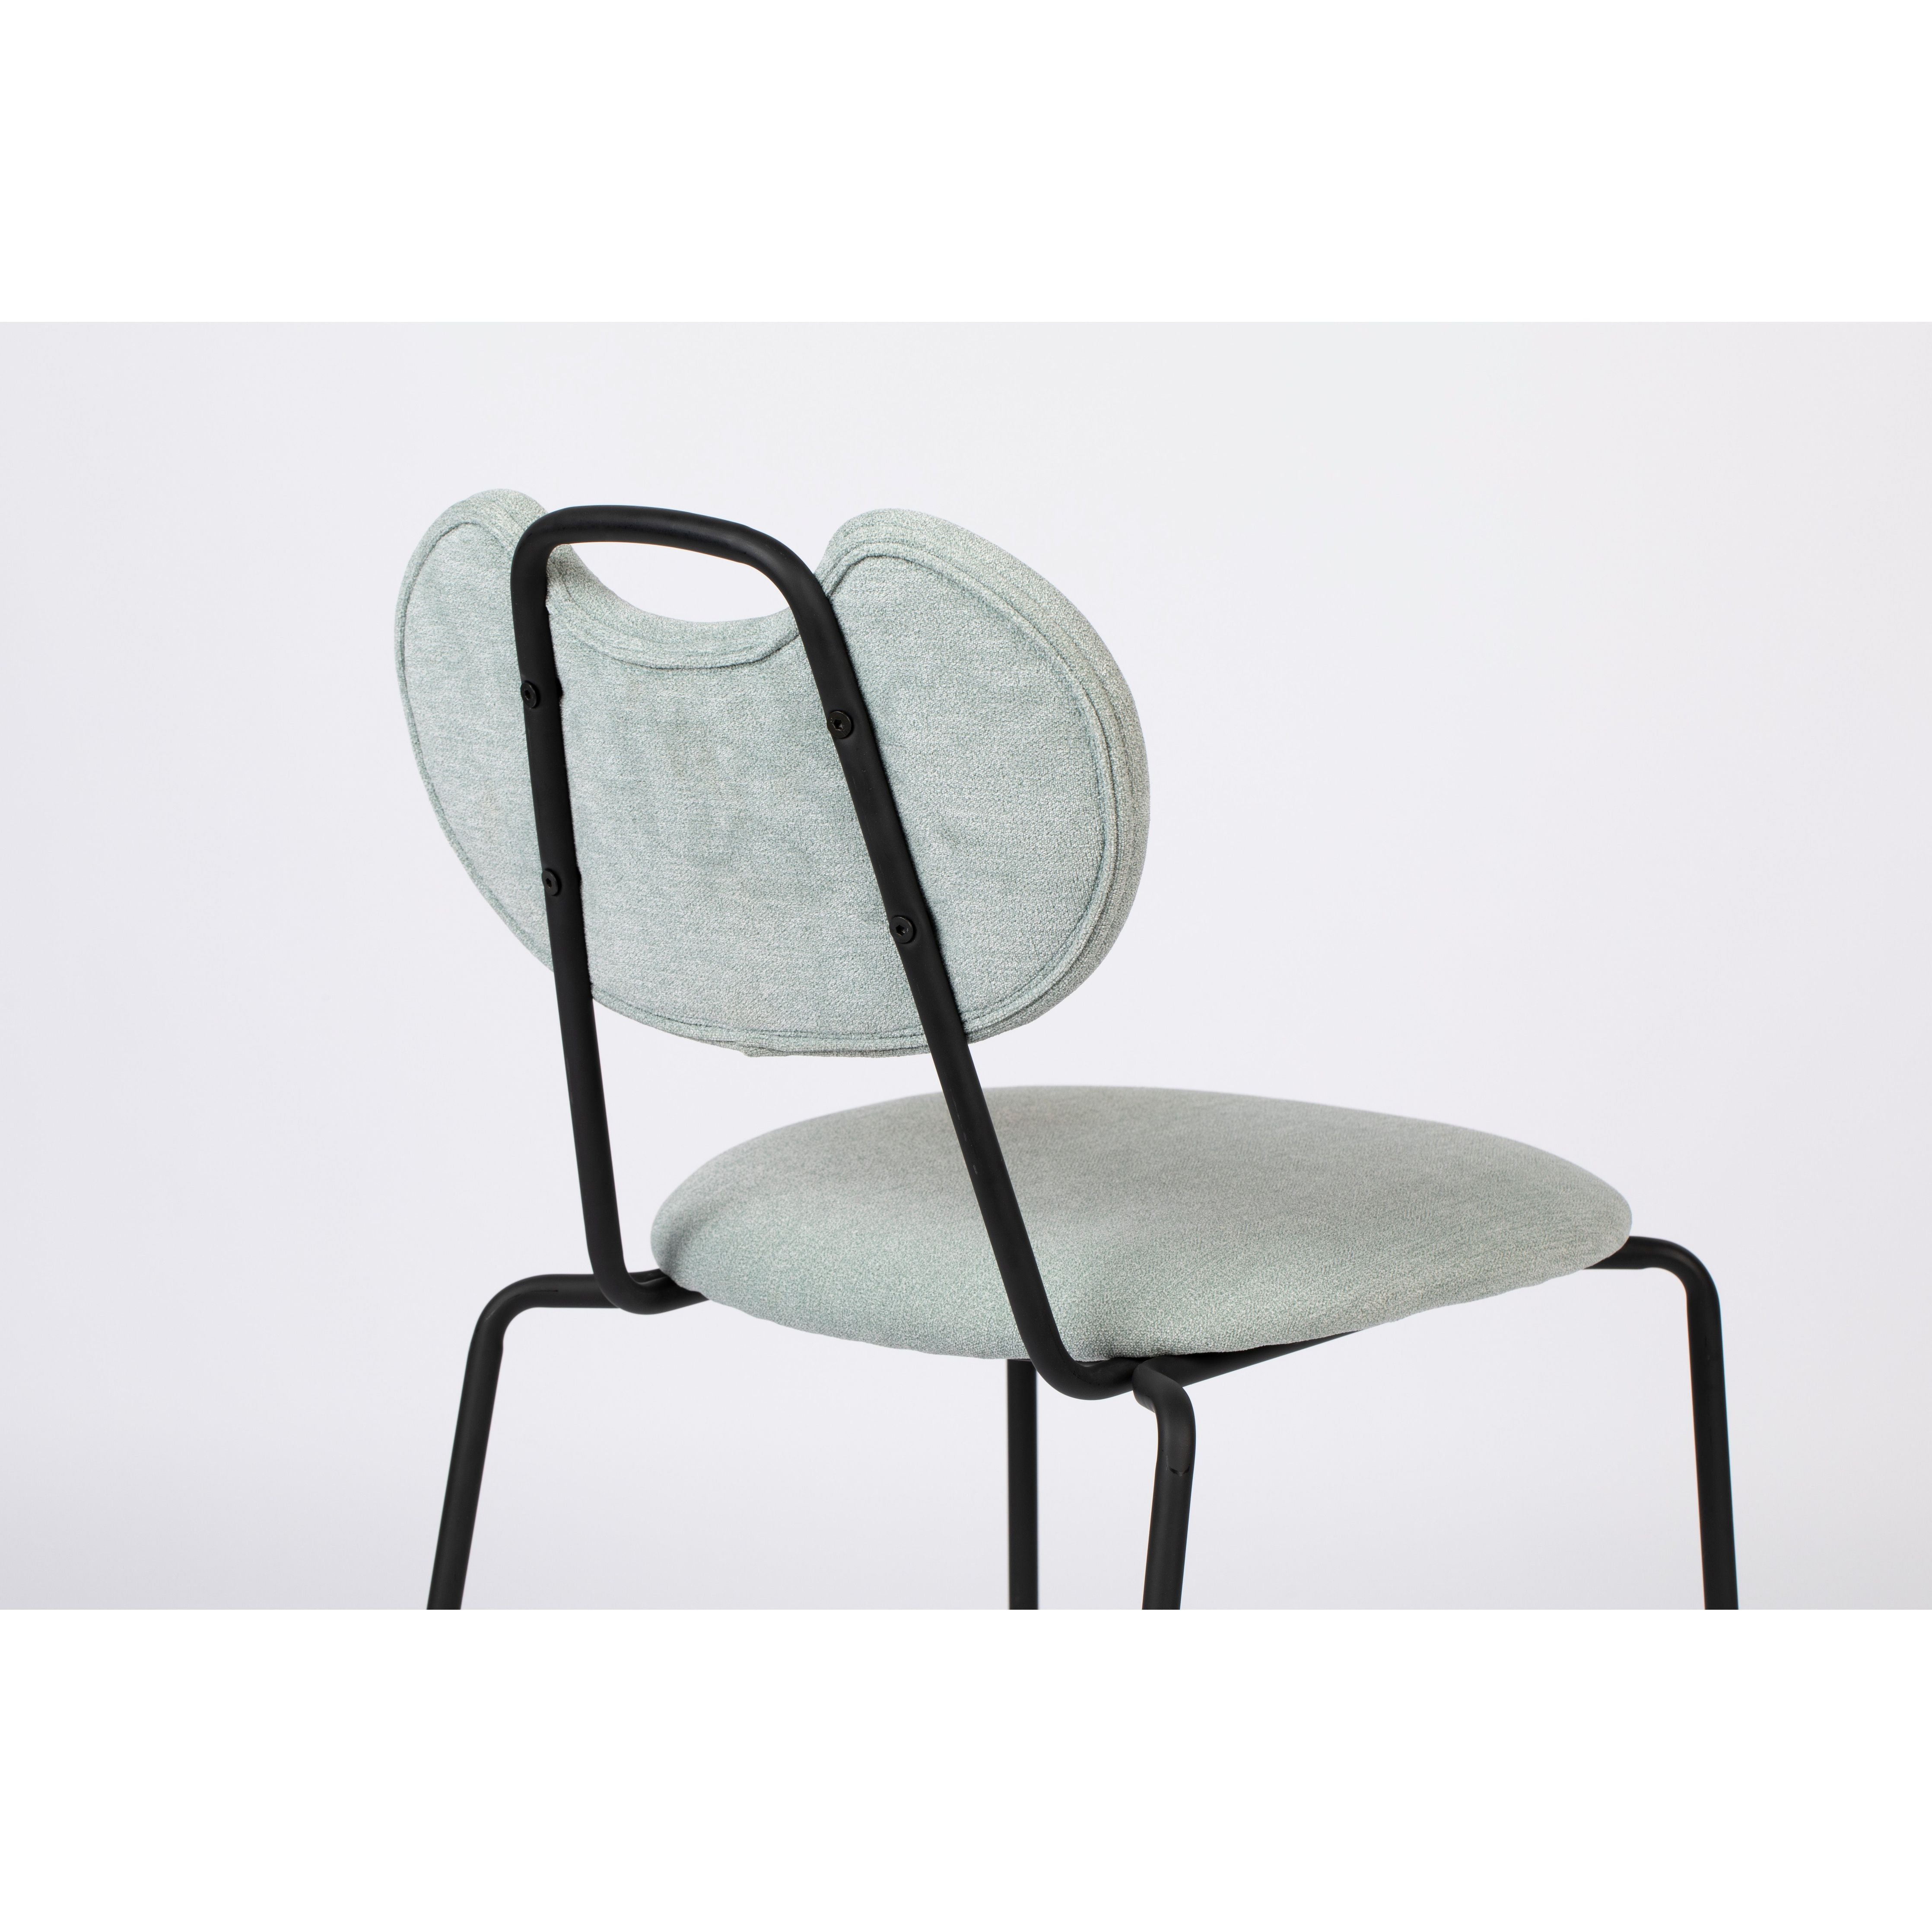 Chair aspen light green | 2 pieces